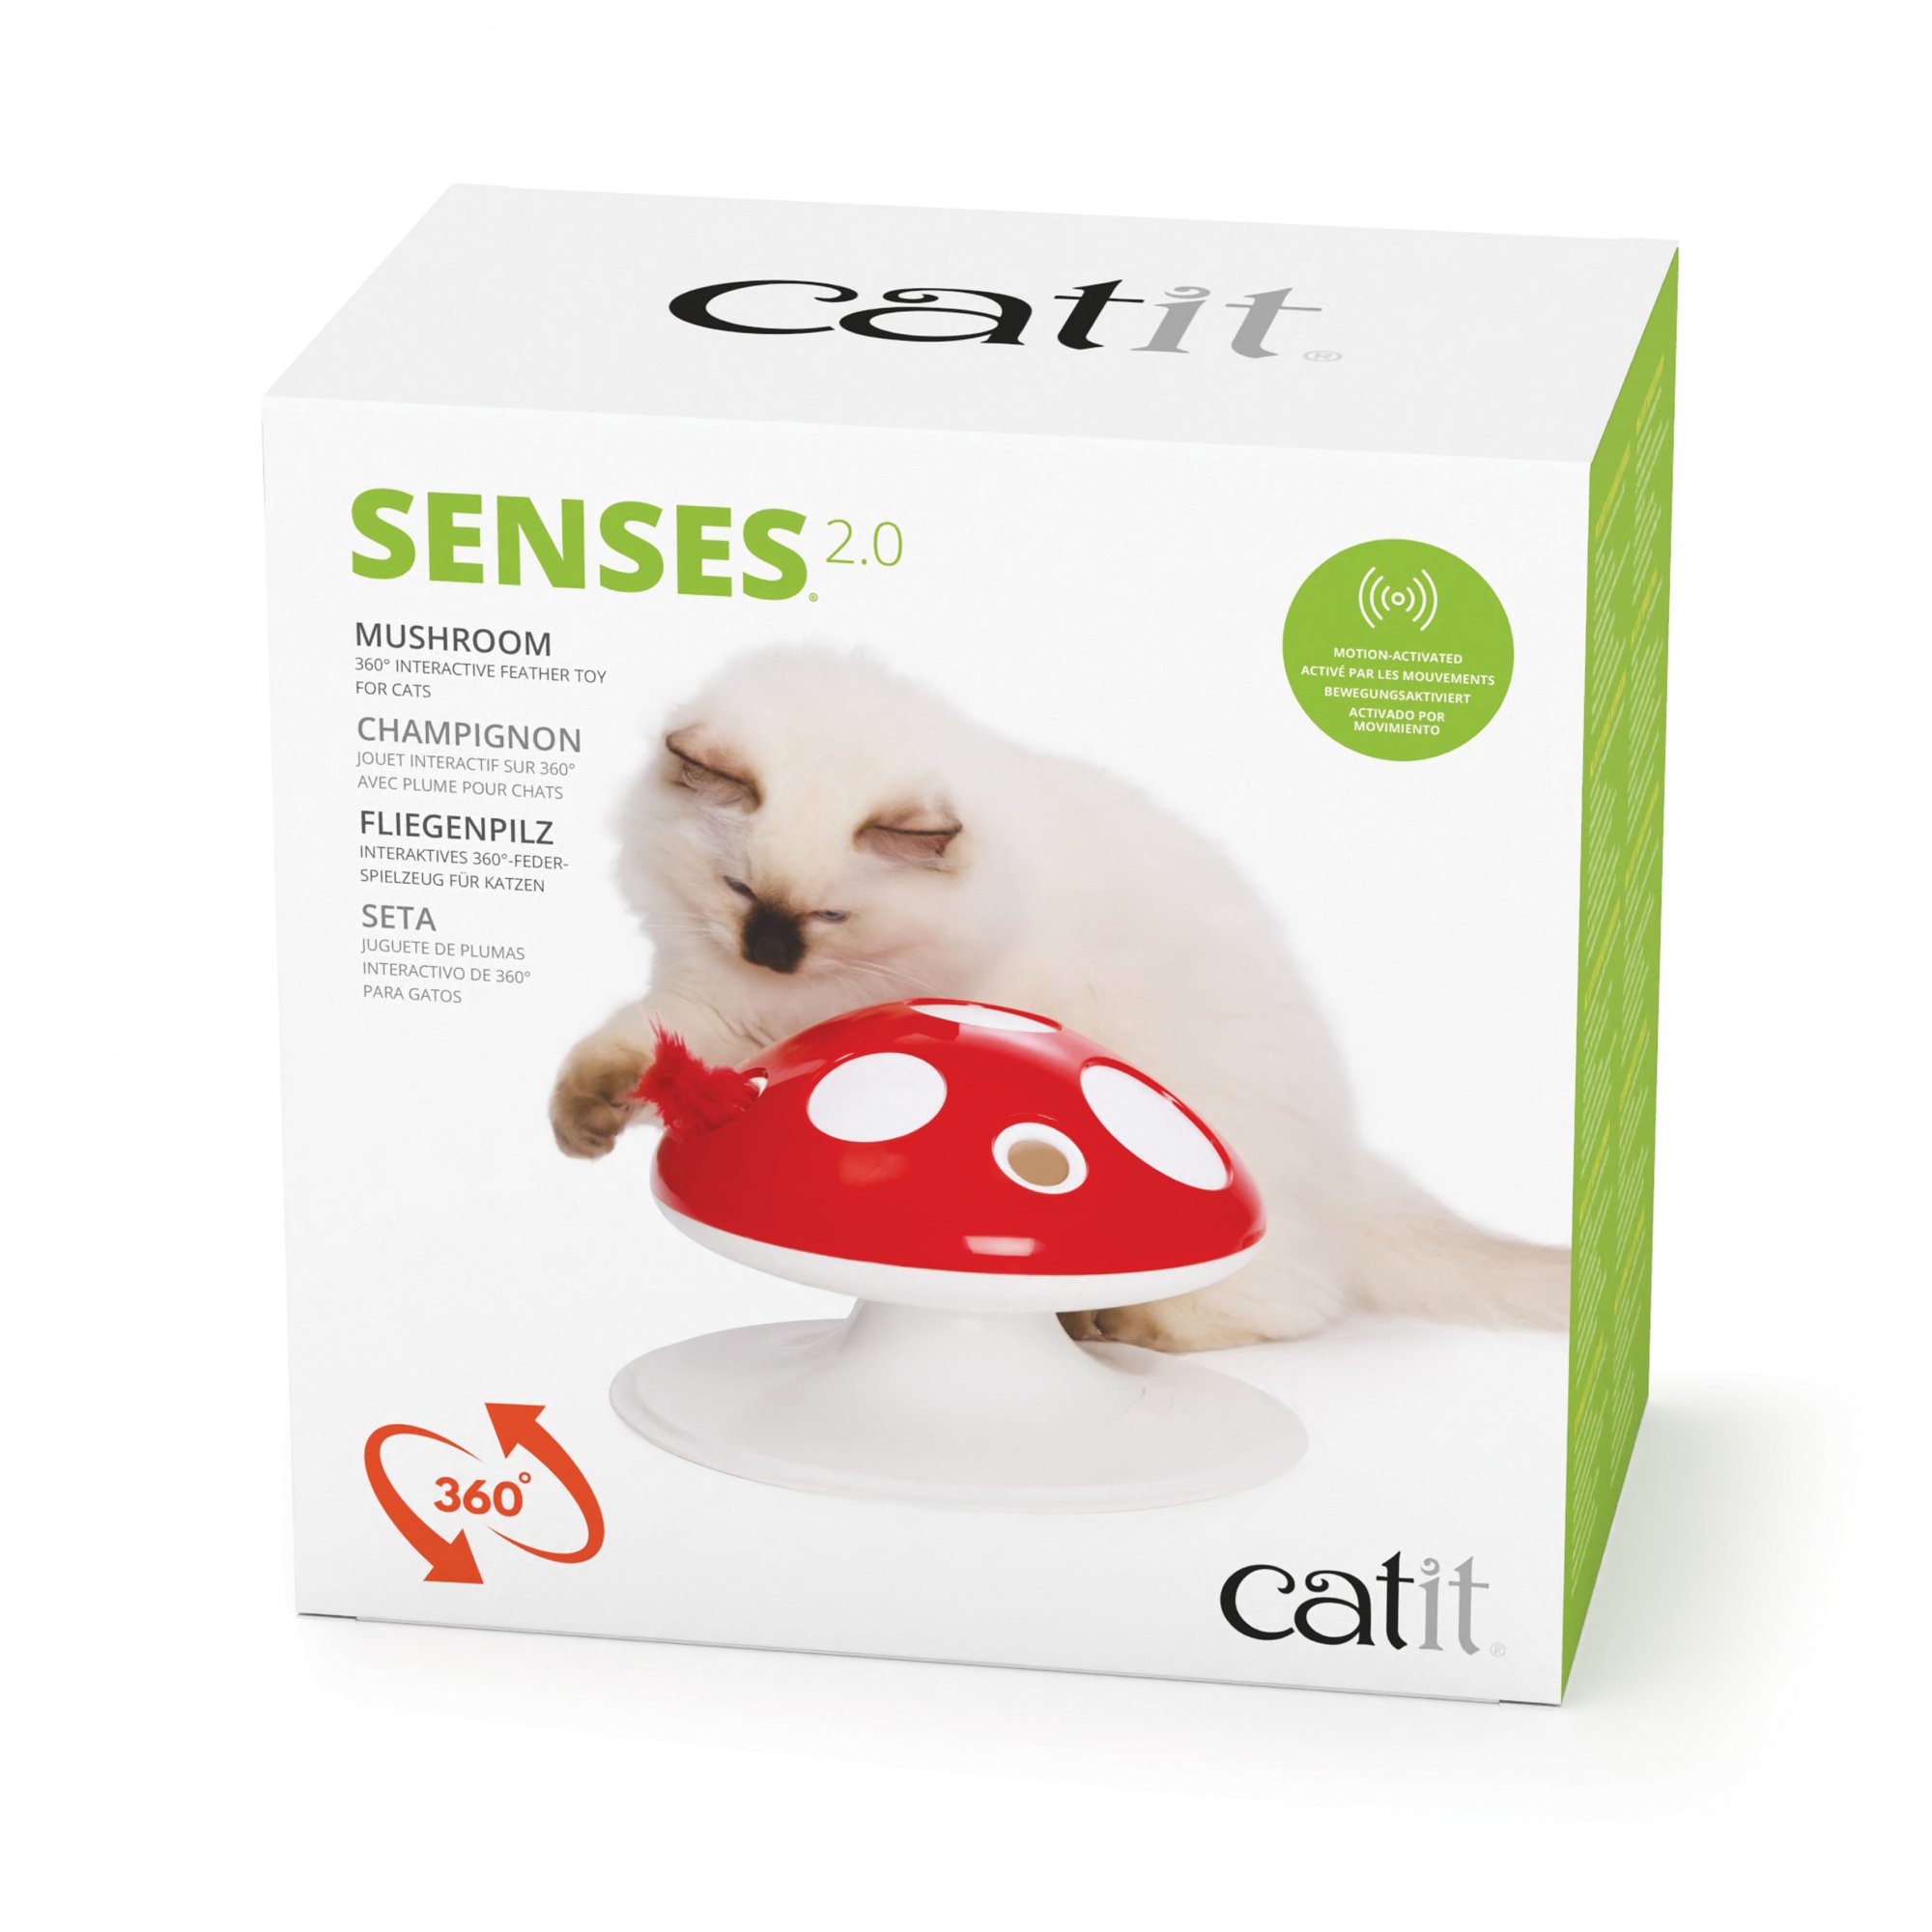 Catit Senses 2.0 Champignon interactif pour chat